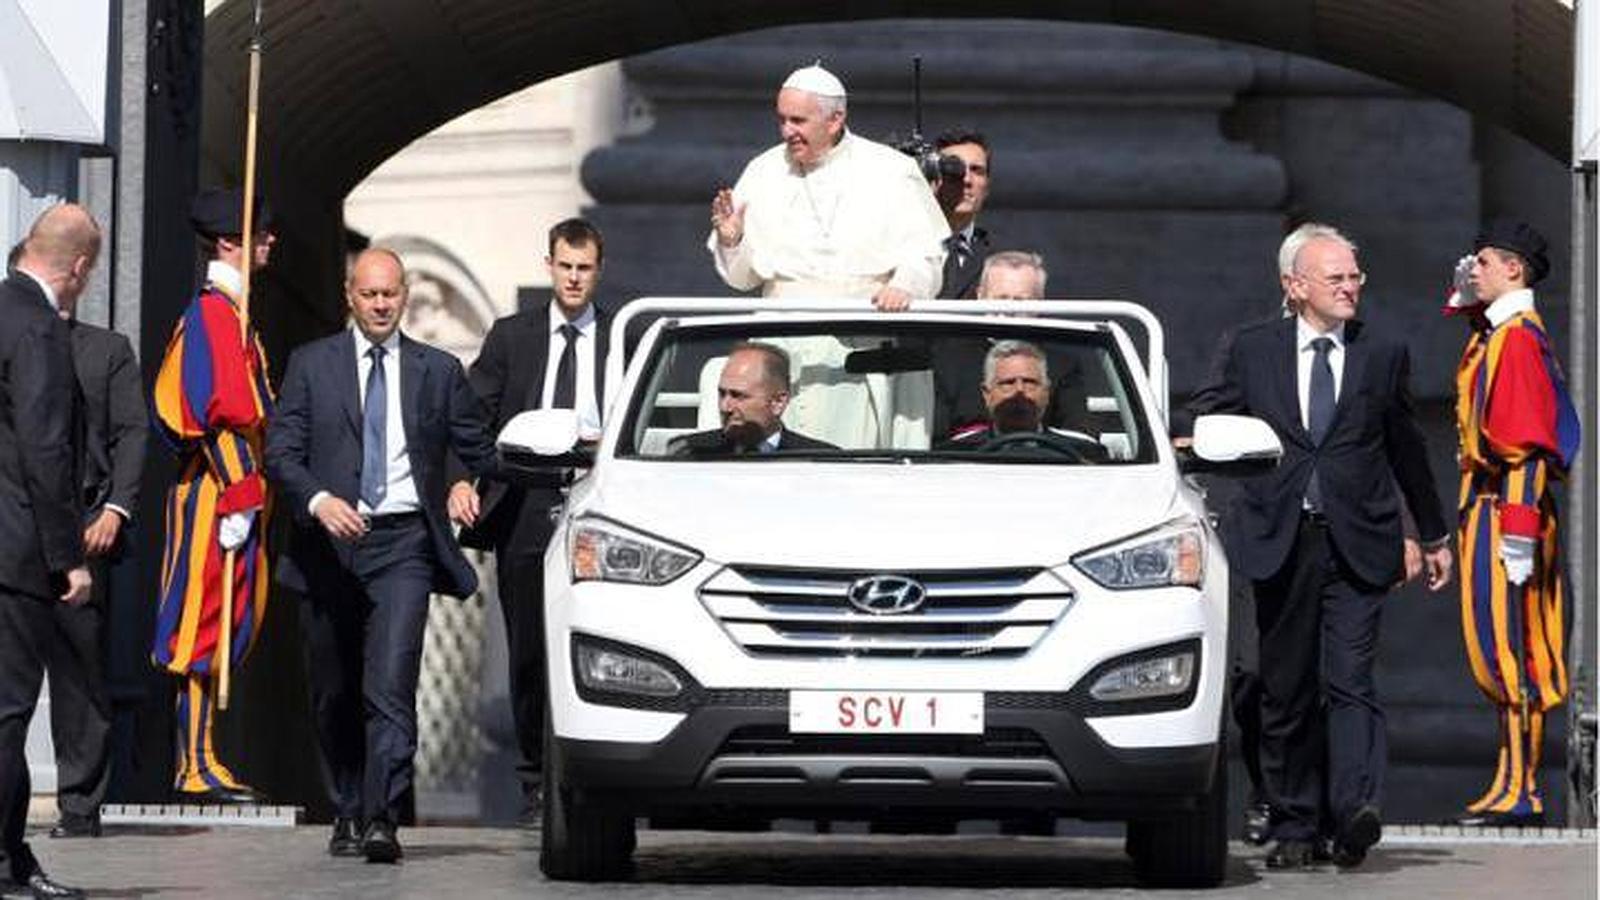 En julio de 2005 se pudo ver al Papa Francisco recorriendo las calles de Roma en un Hyundai Santa Fe